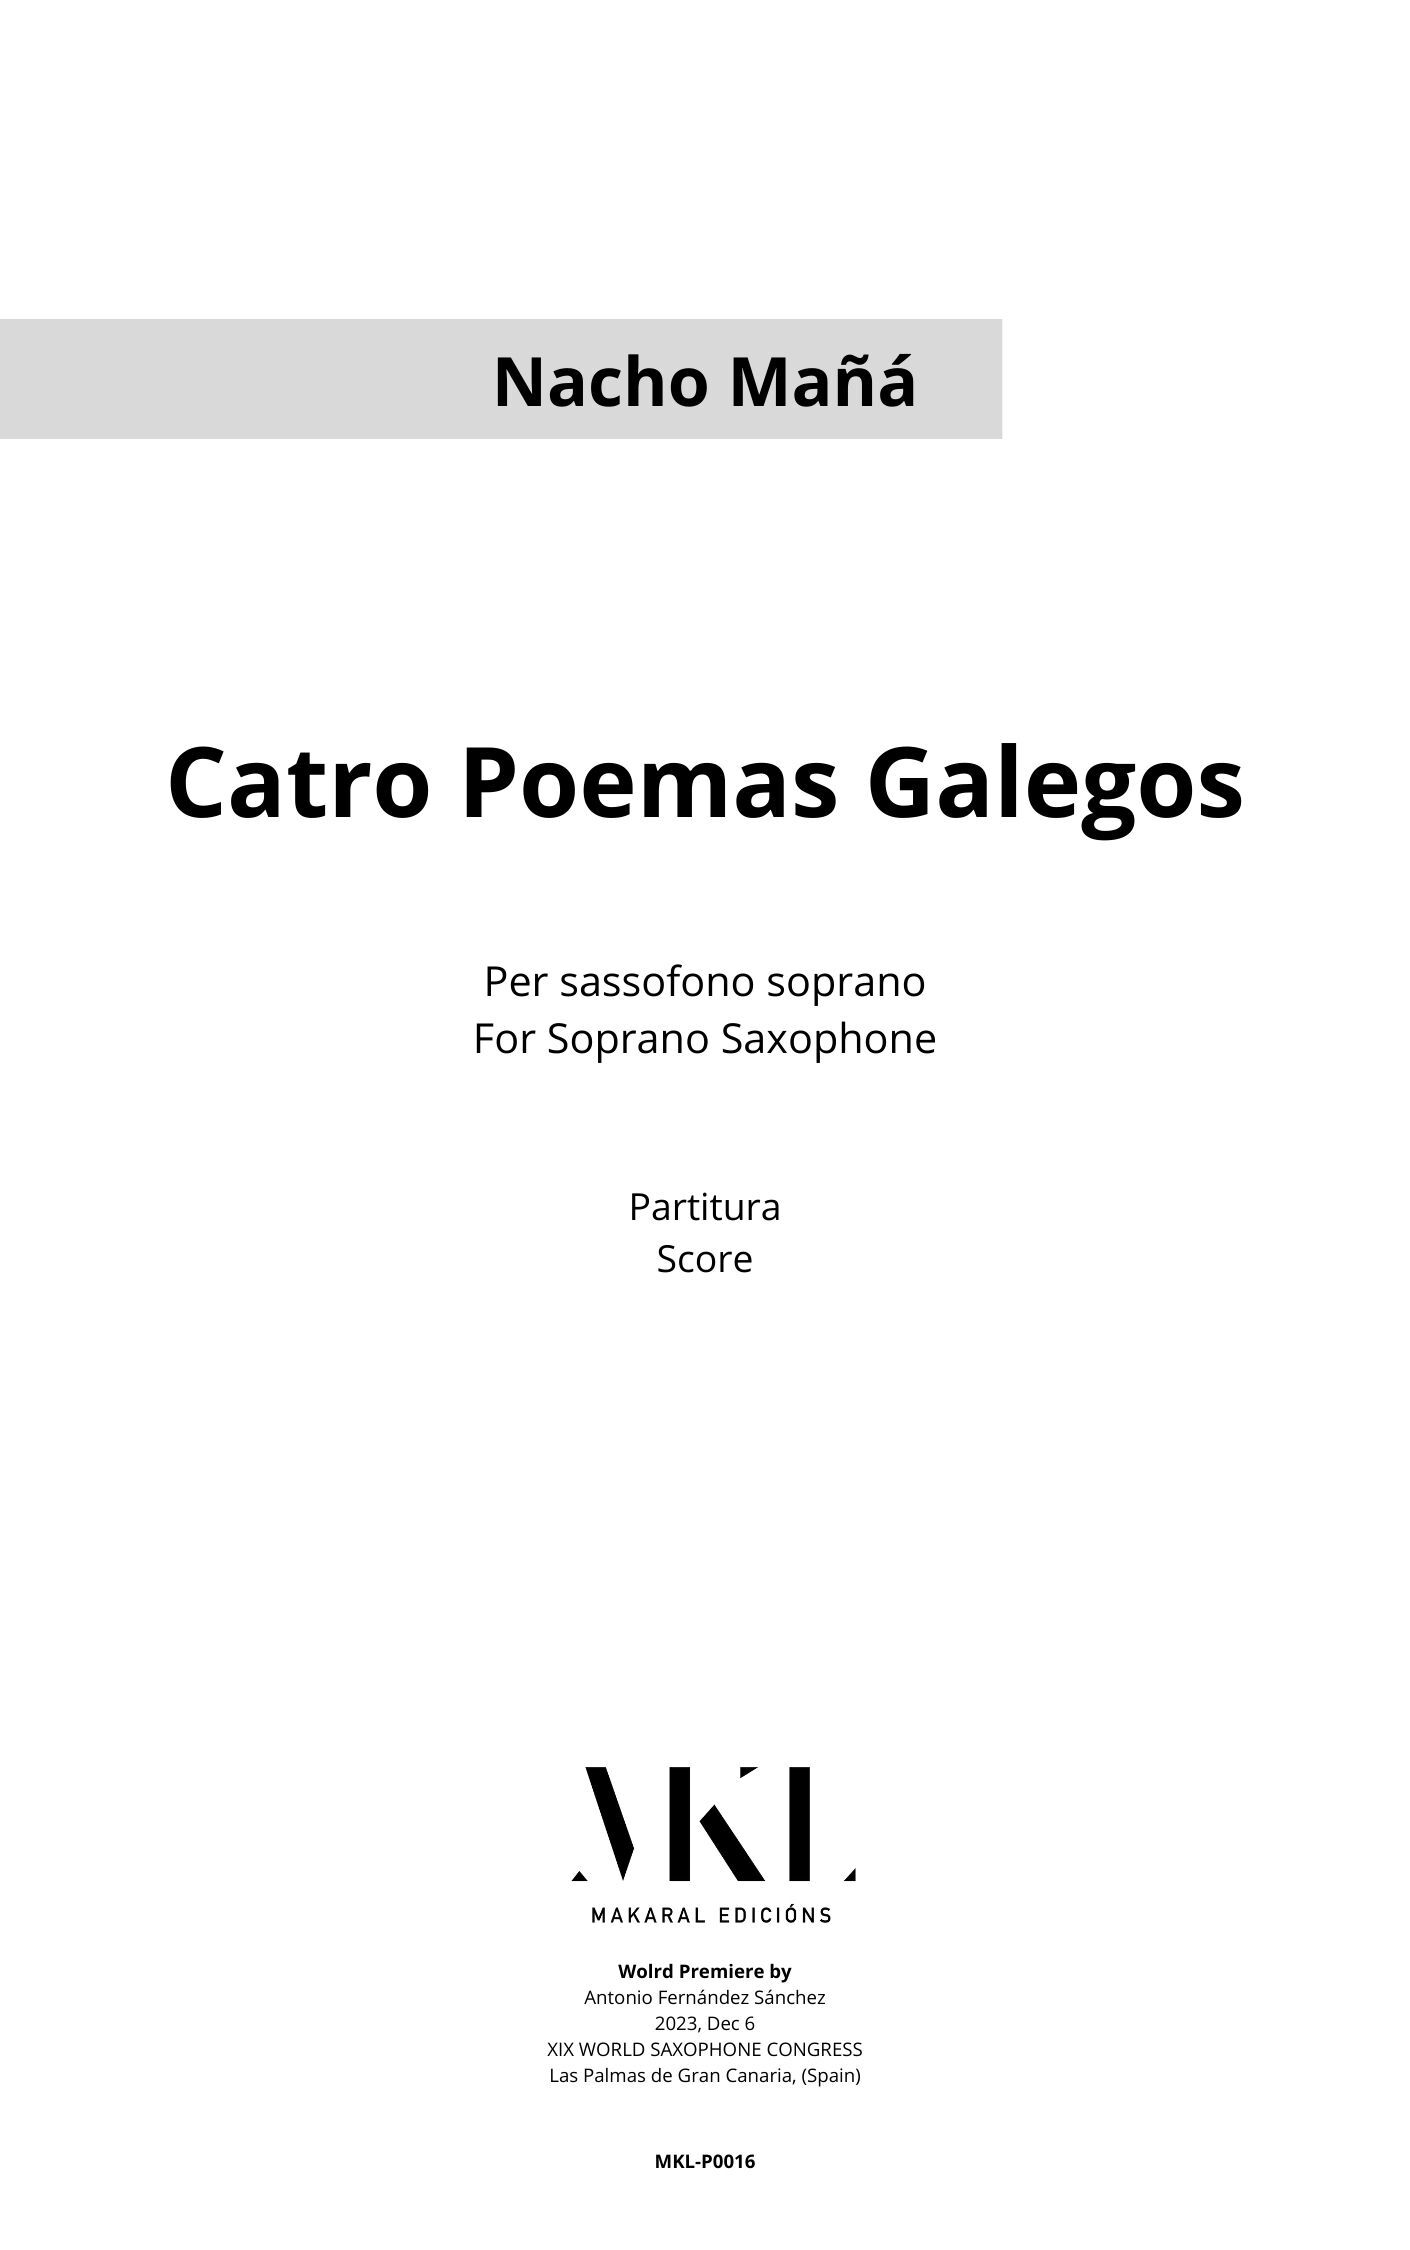 <p translate="no">"Catro Poemas Galegos"<p>